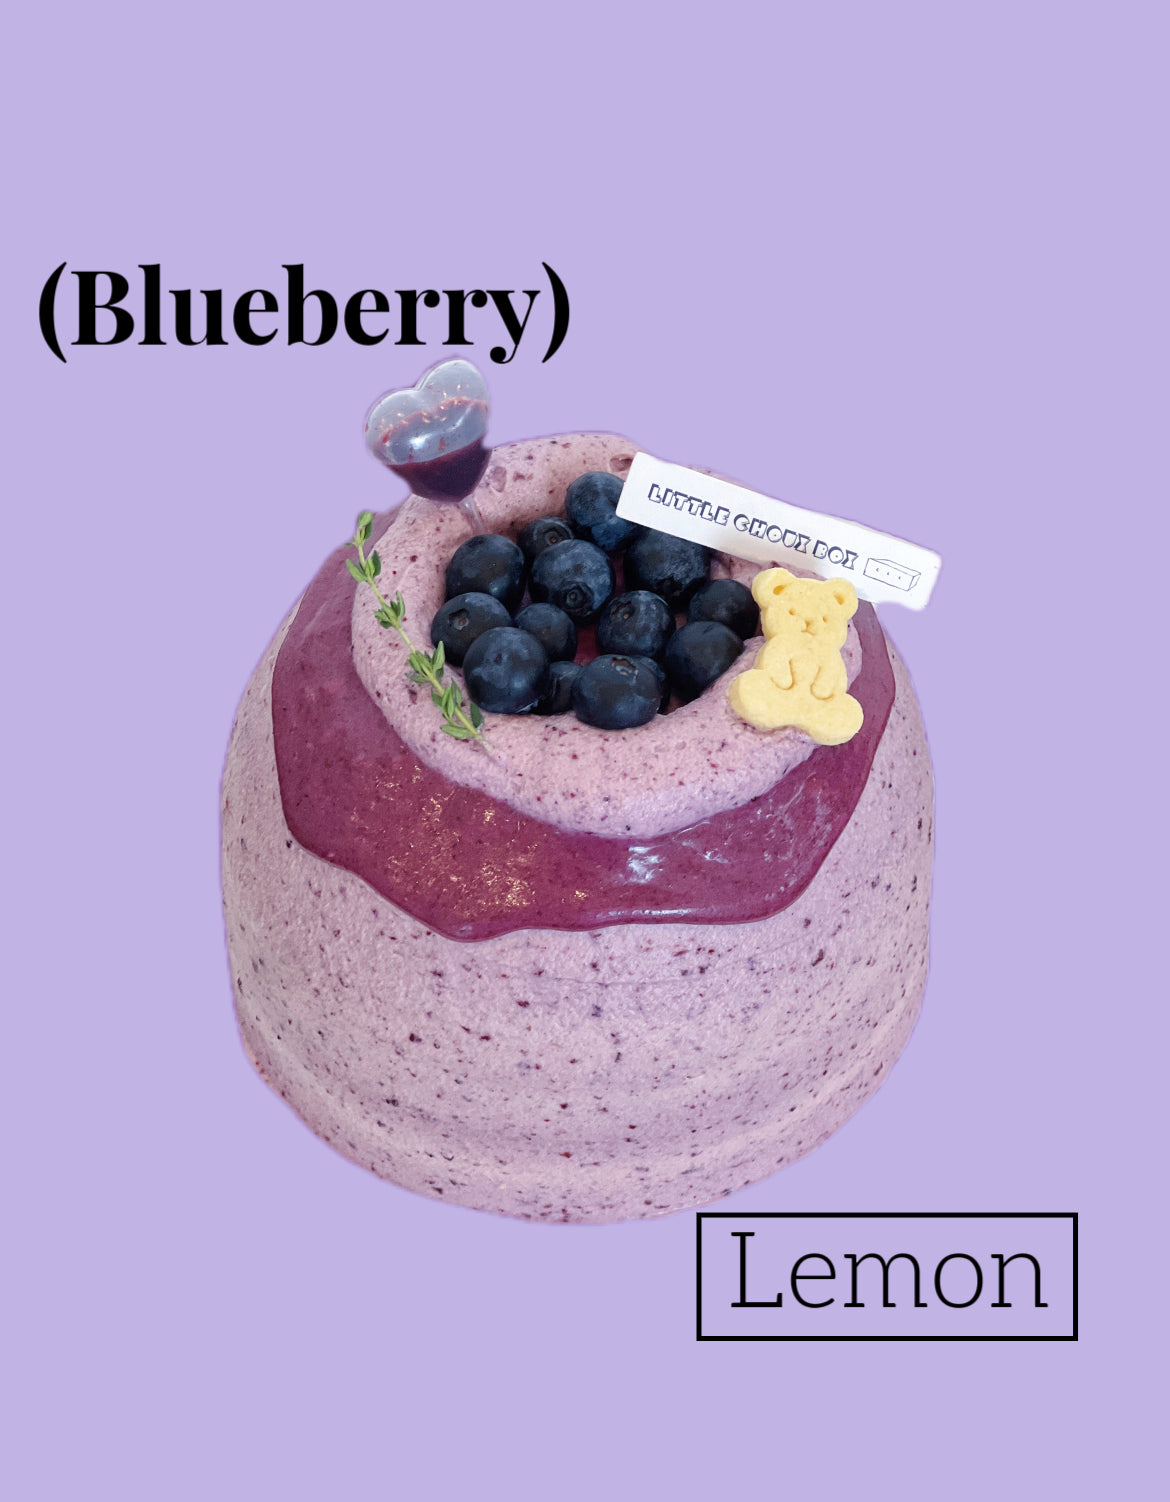 Blueberry Lemon Cake